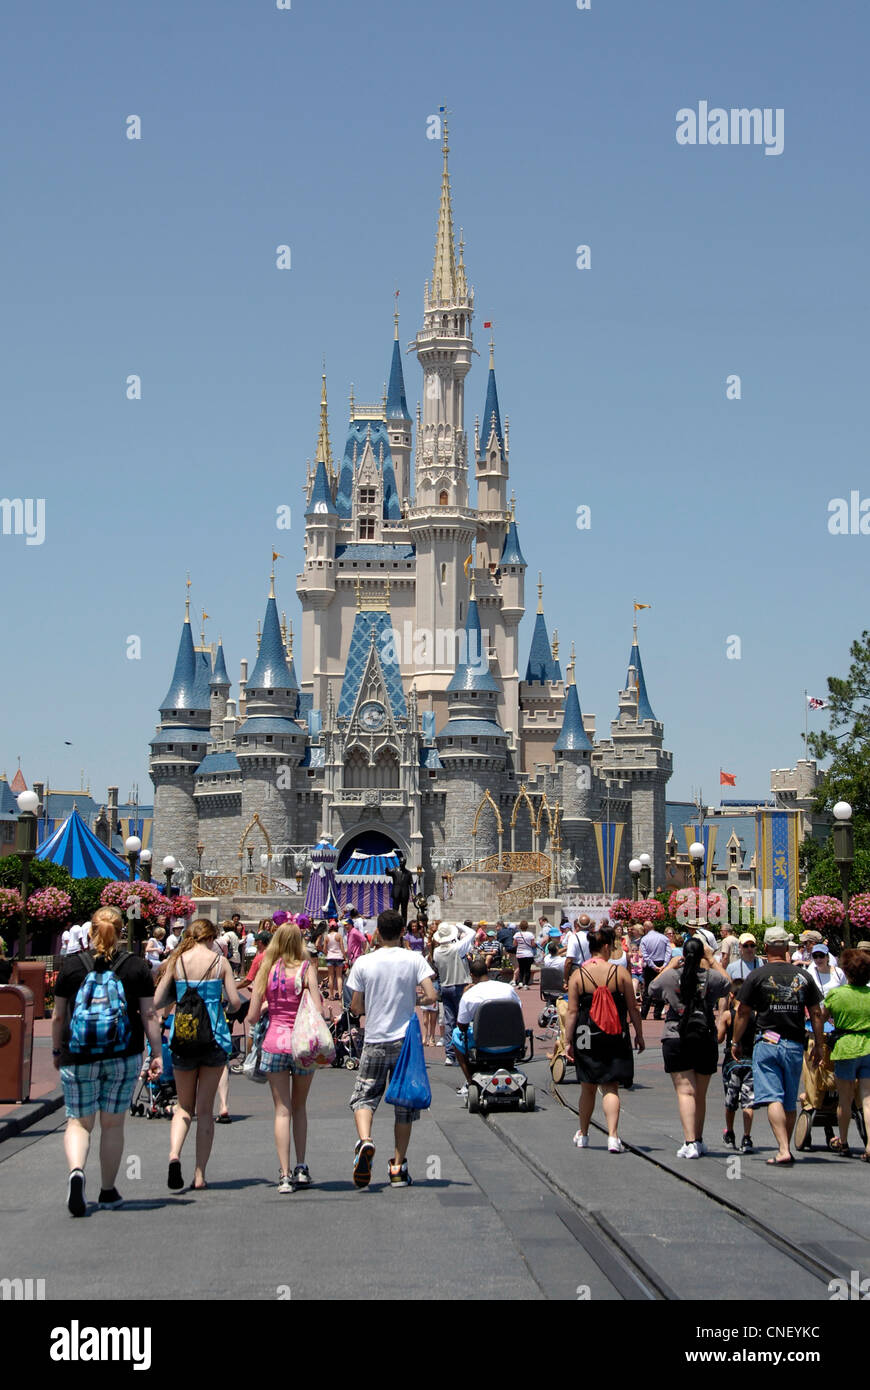 Il regno magico di Castello di Cenerentola, il Walt Disney World Resort, comunemente noto come il Walt Disney World e in modo informale come Disney World. Foto Stock